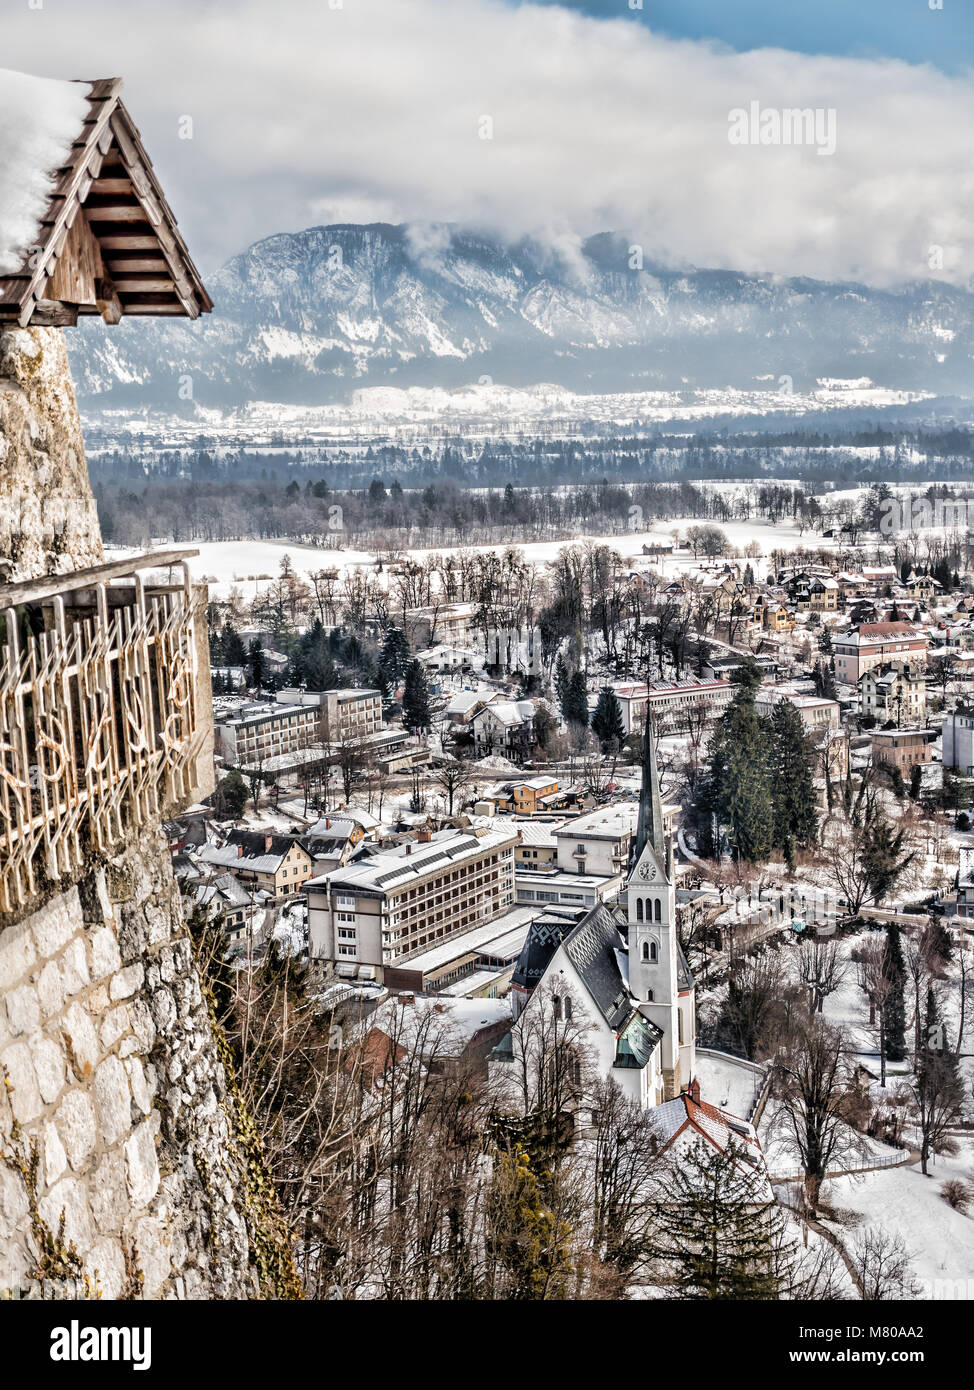 La ville de Bled en hiver vue depuis le château de Bled, Slovénie, Europe Banque D'Images